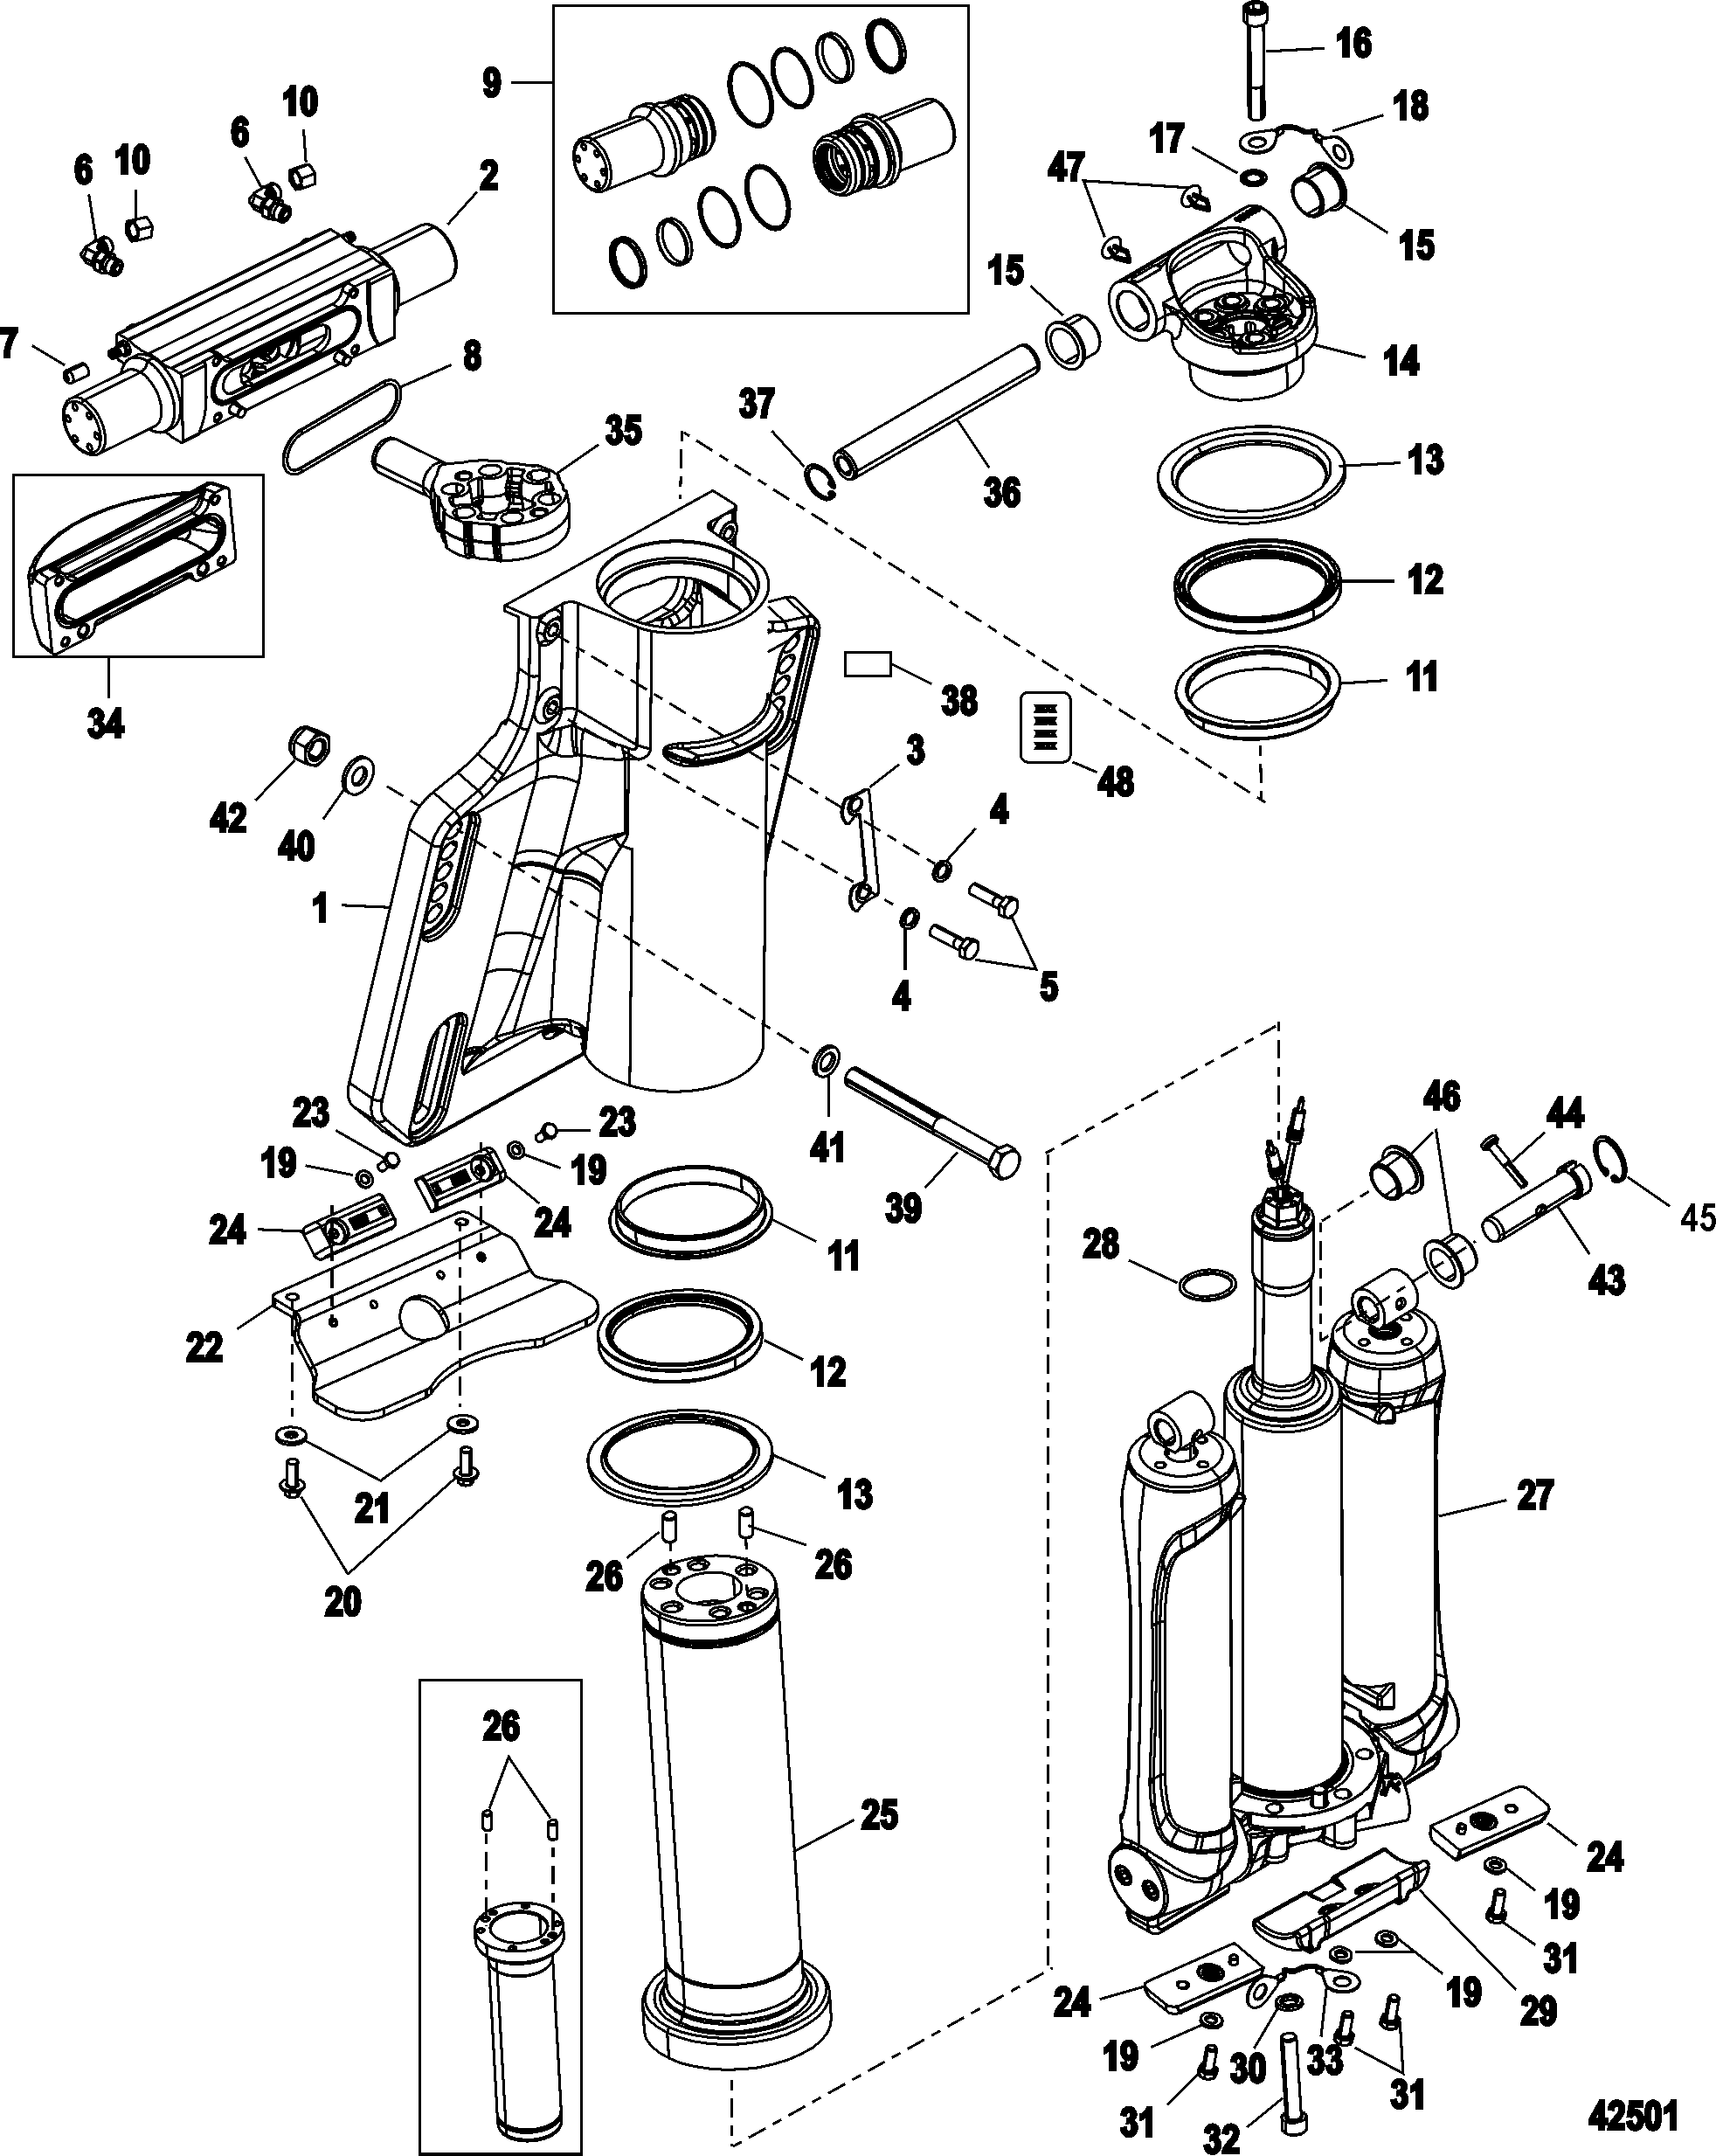 Power Trim/Steering Cylinder